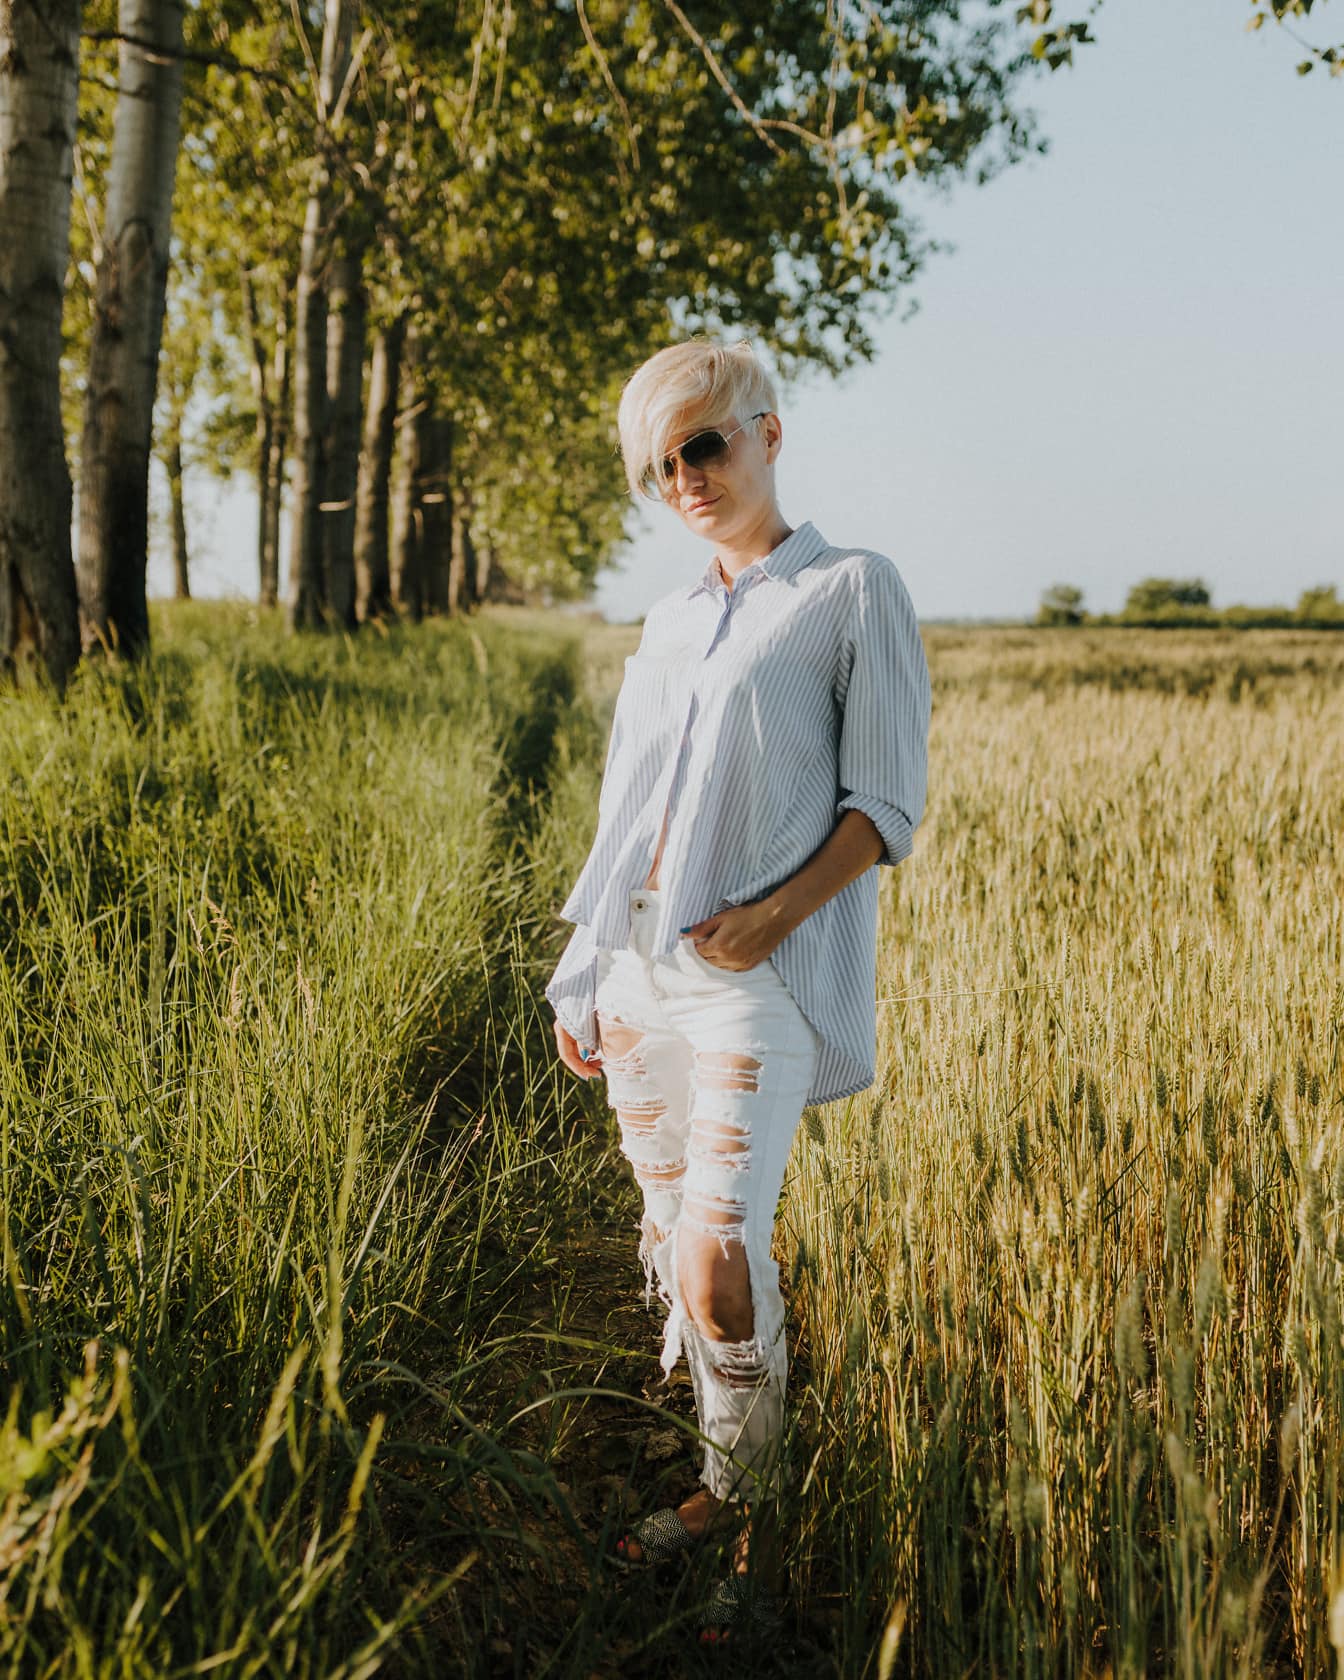 Buğday tarlasında açık rahat kıyafetli kadın fotoğraf modeli